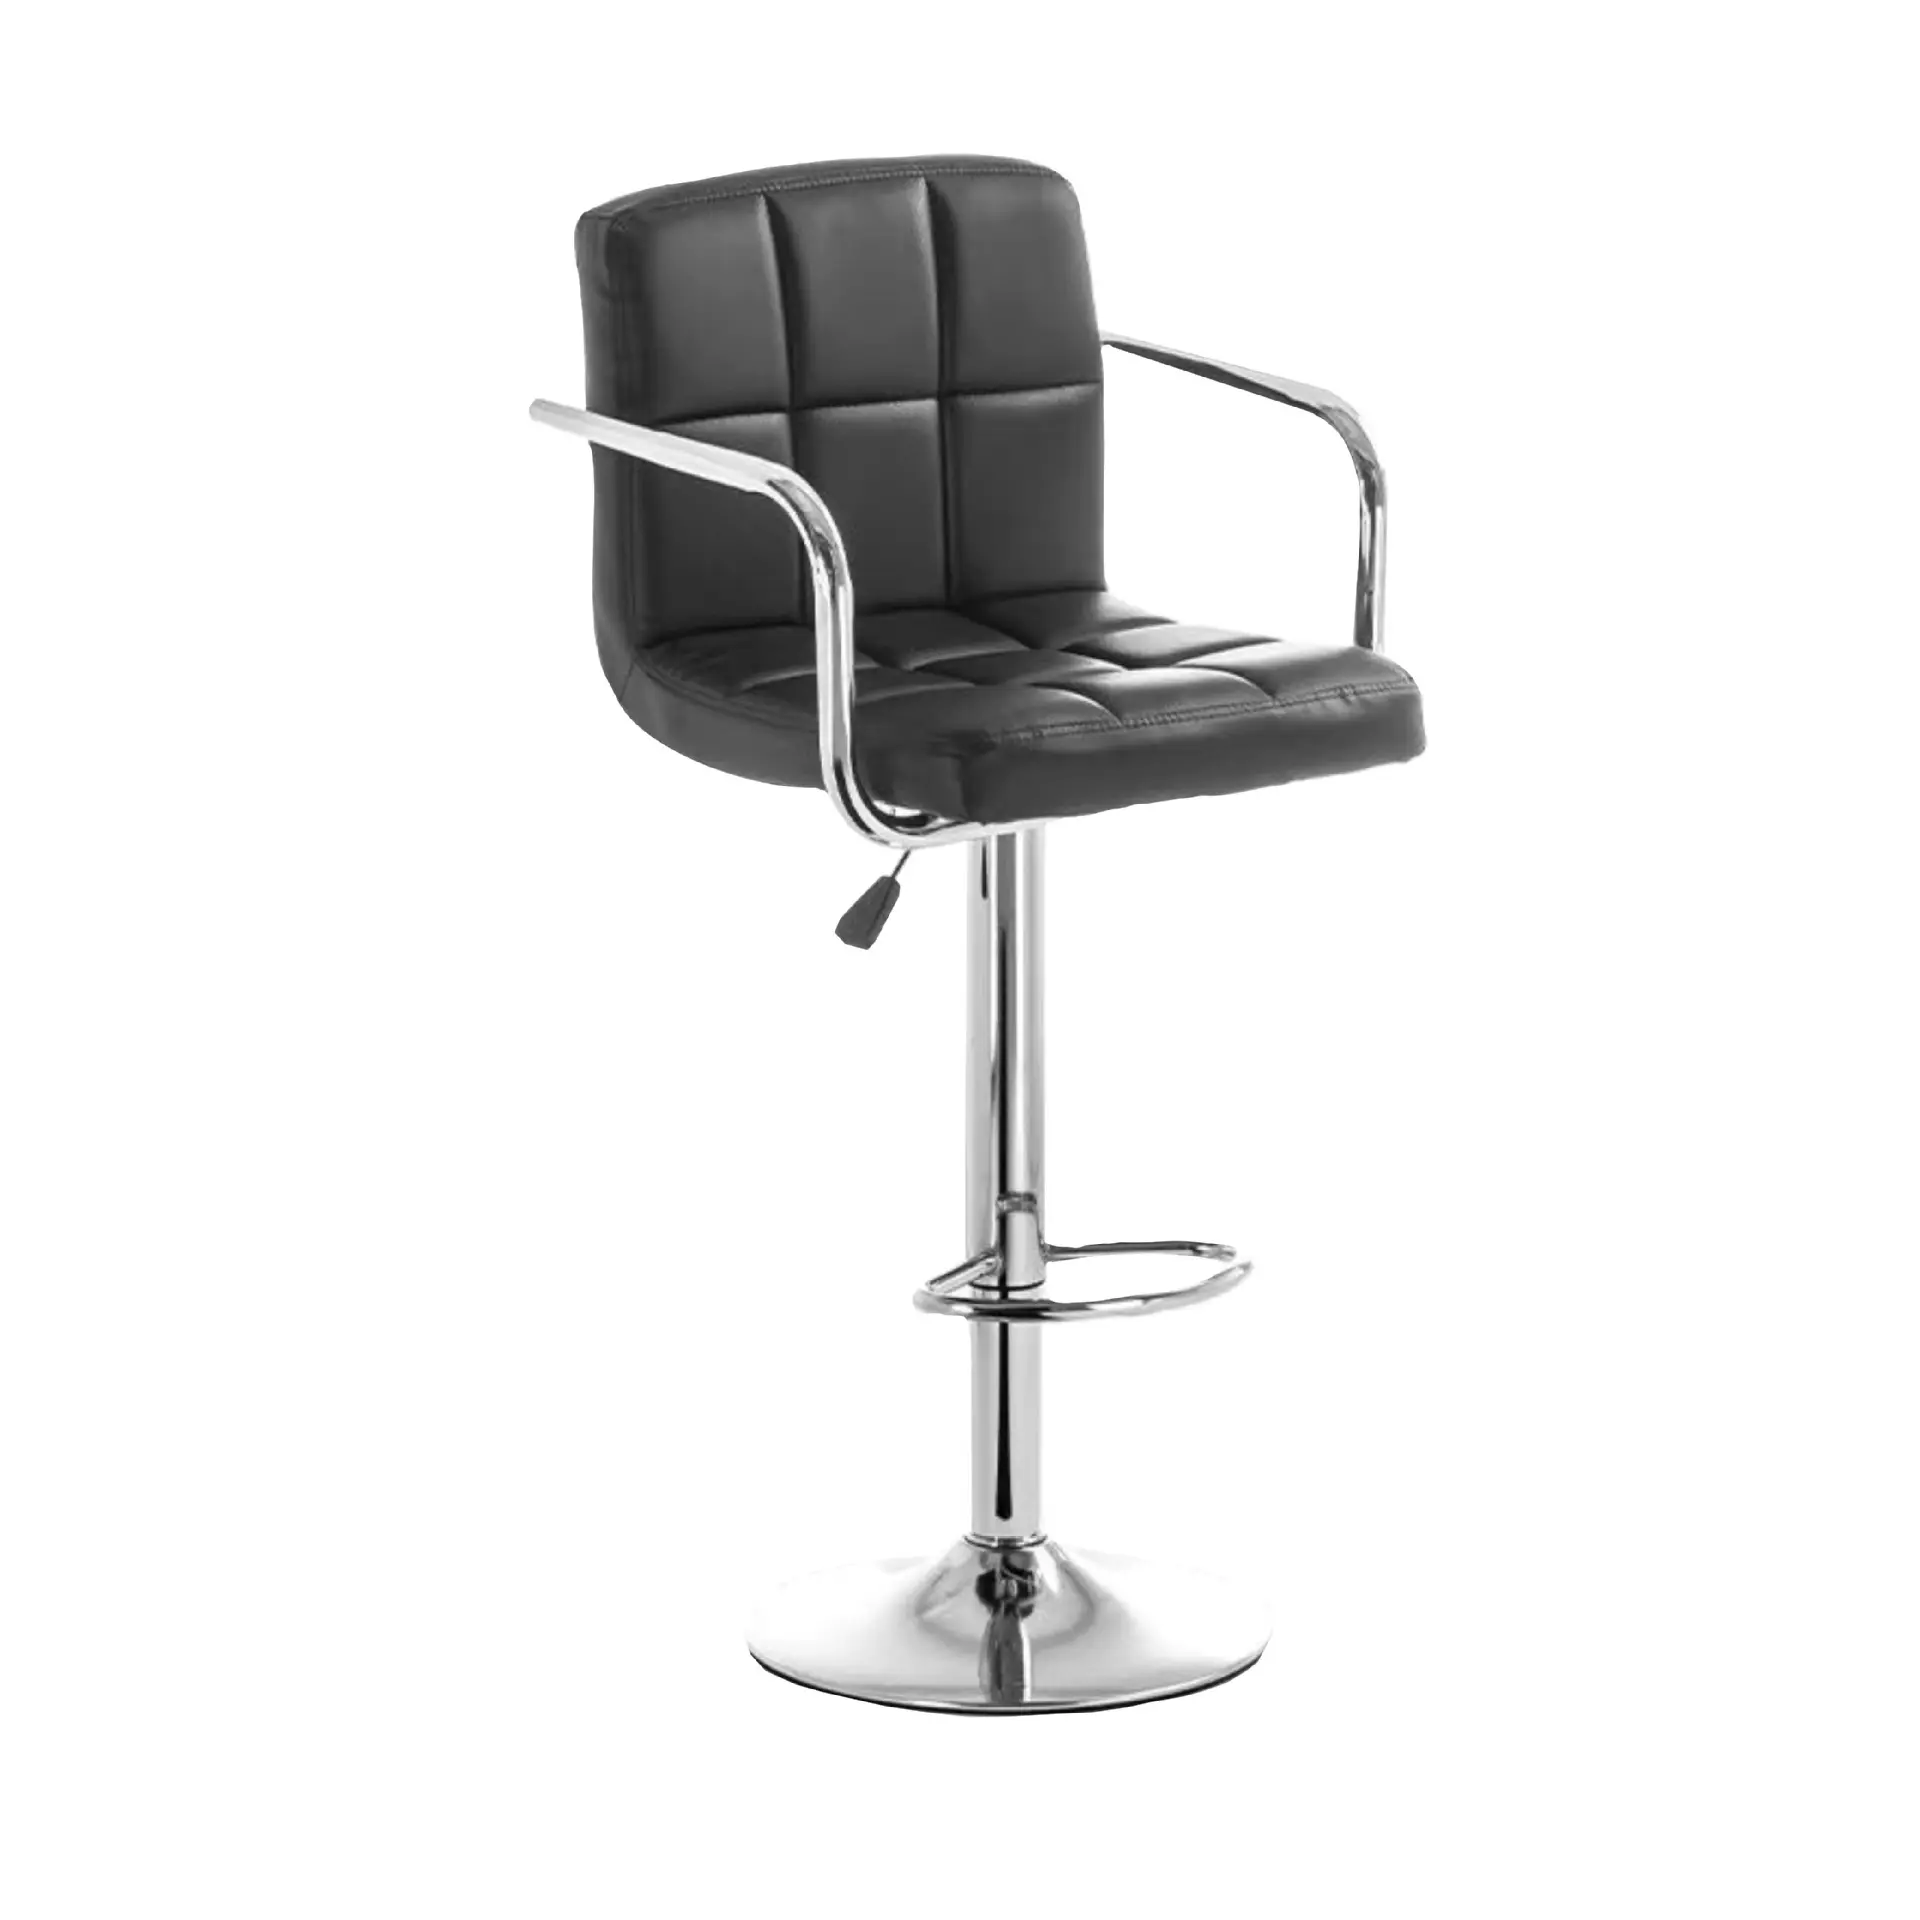 Bar chair lift chair backrest swivel high stool cashier bar chair front bar stool modern simple high stools